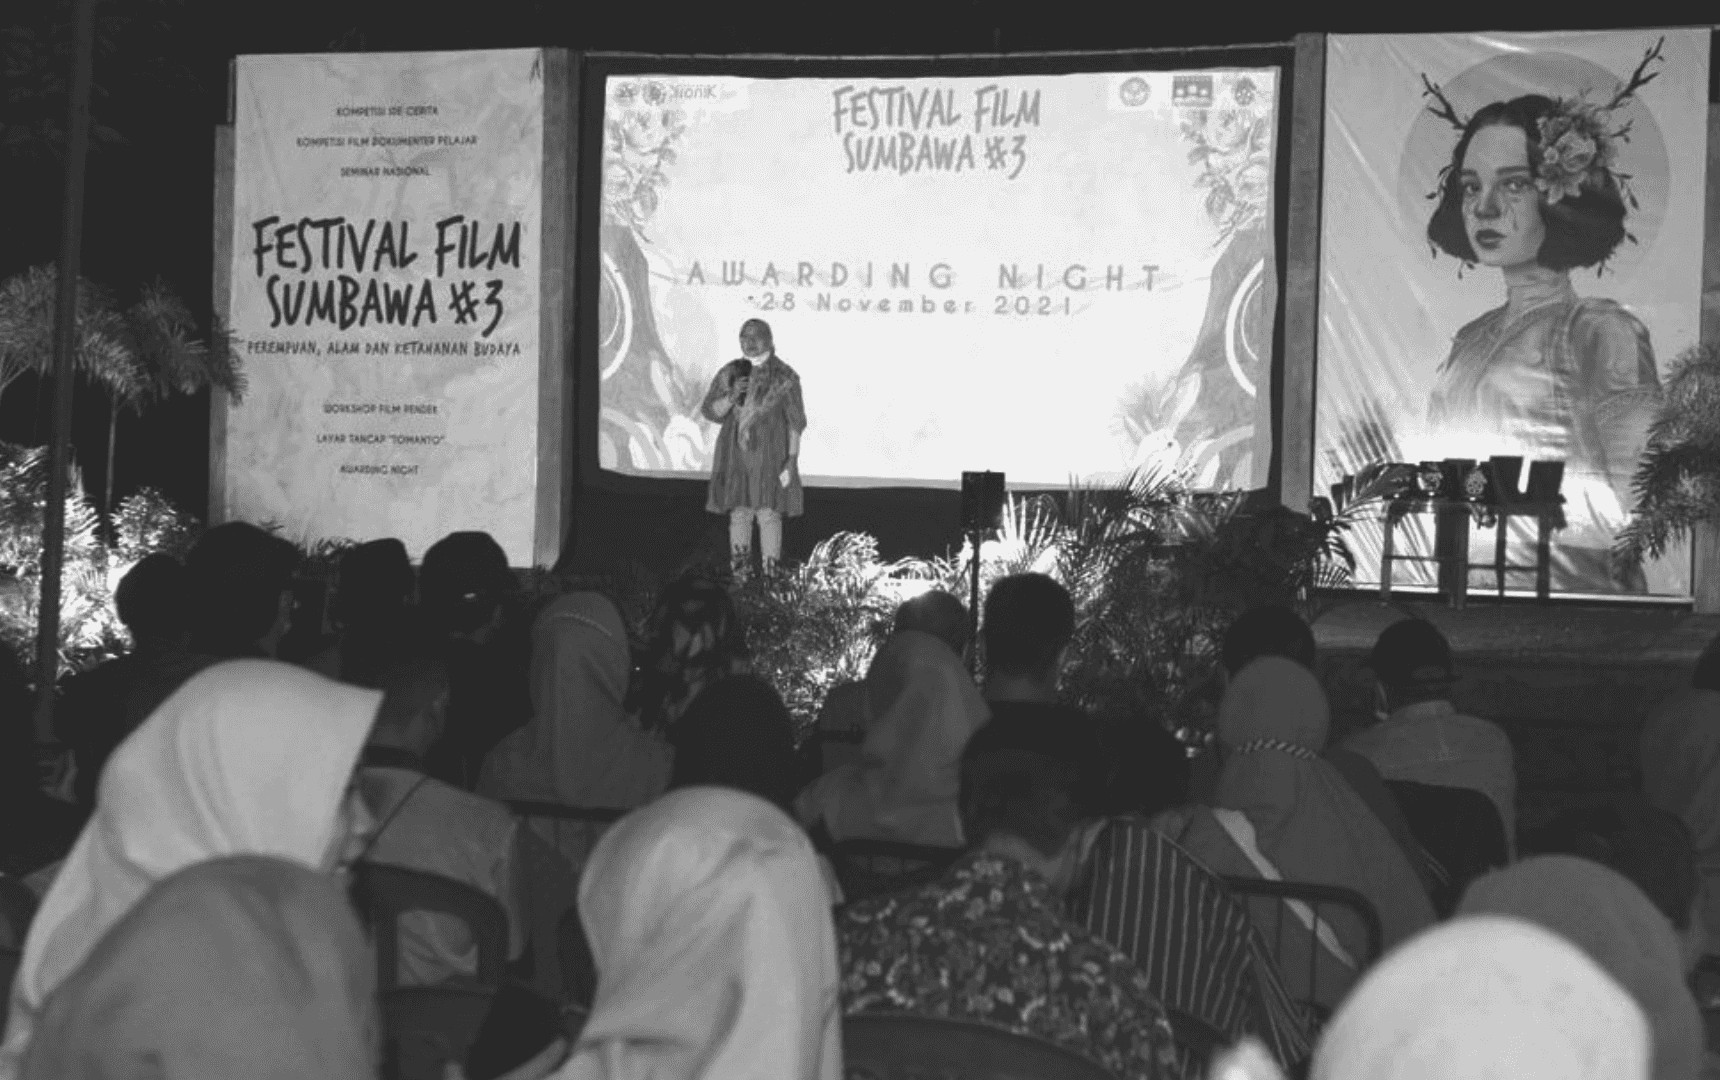  Yuli Andari, inisiator Sumbawa Cinema Society, memberikan sambutan di Awarding night Festival Film Sumbawa 3 di 2021BW